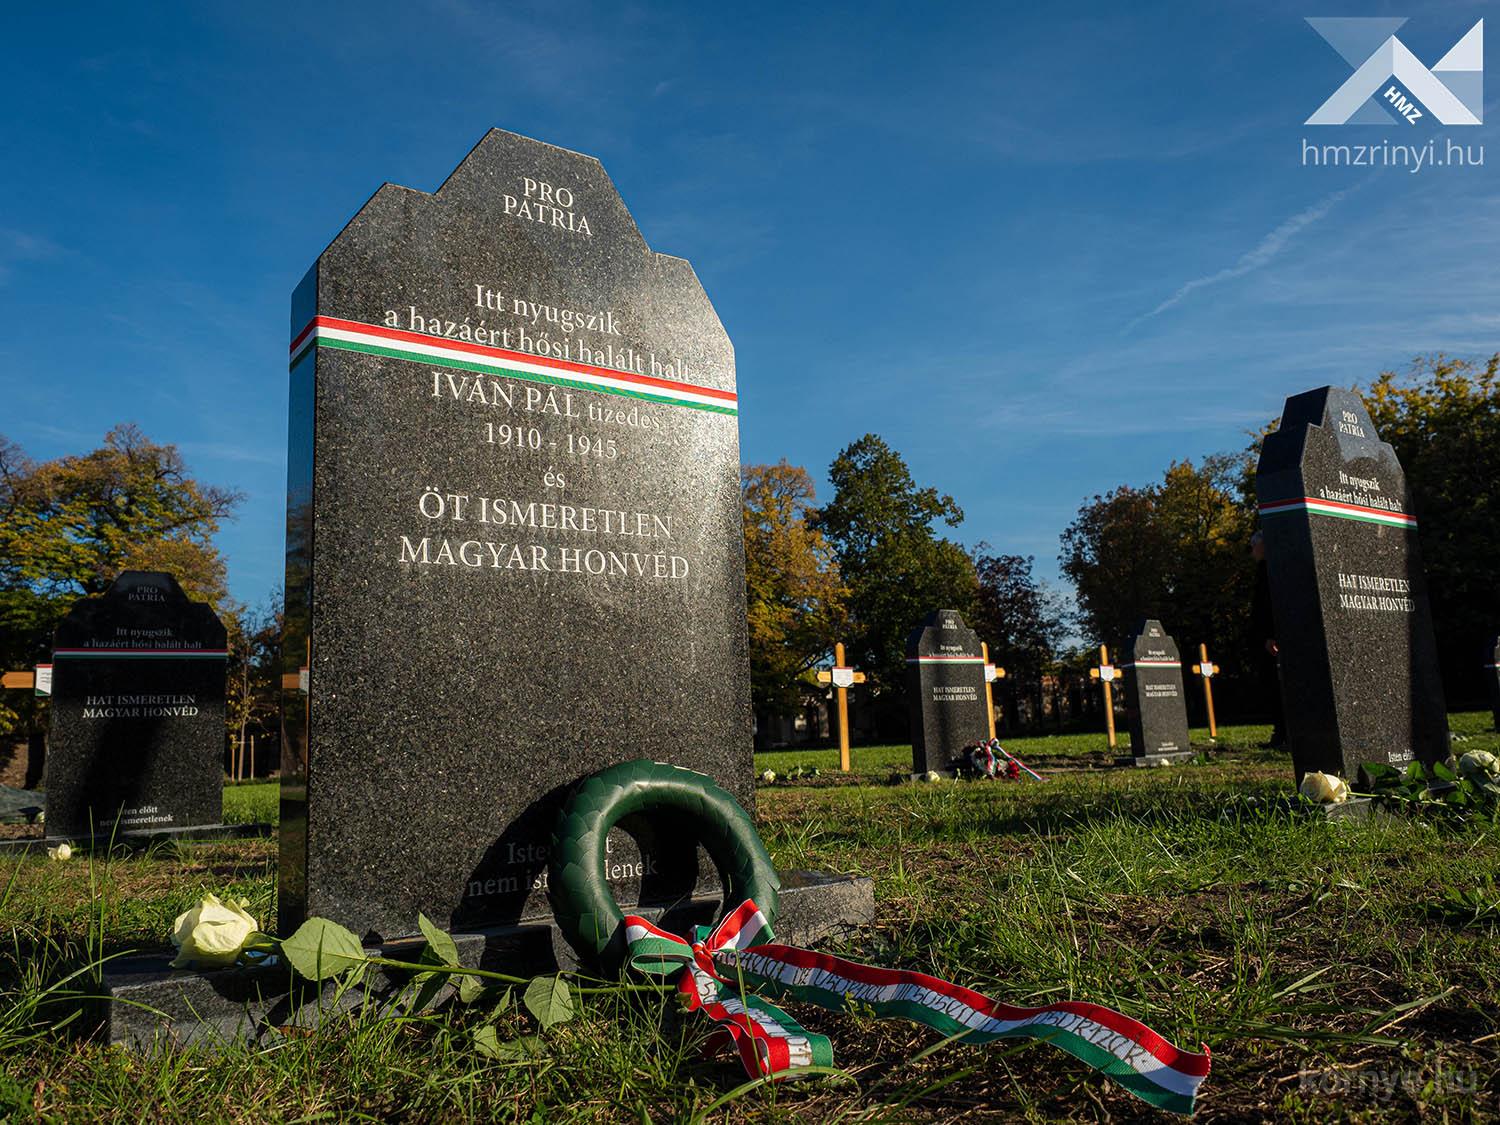 2022-10-17-Környei feltárás: újratemették a hősi halált halt magyar honvédeket 